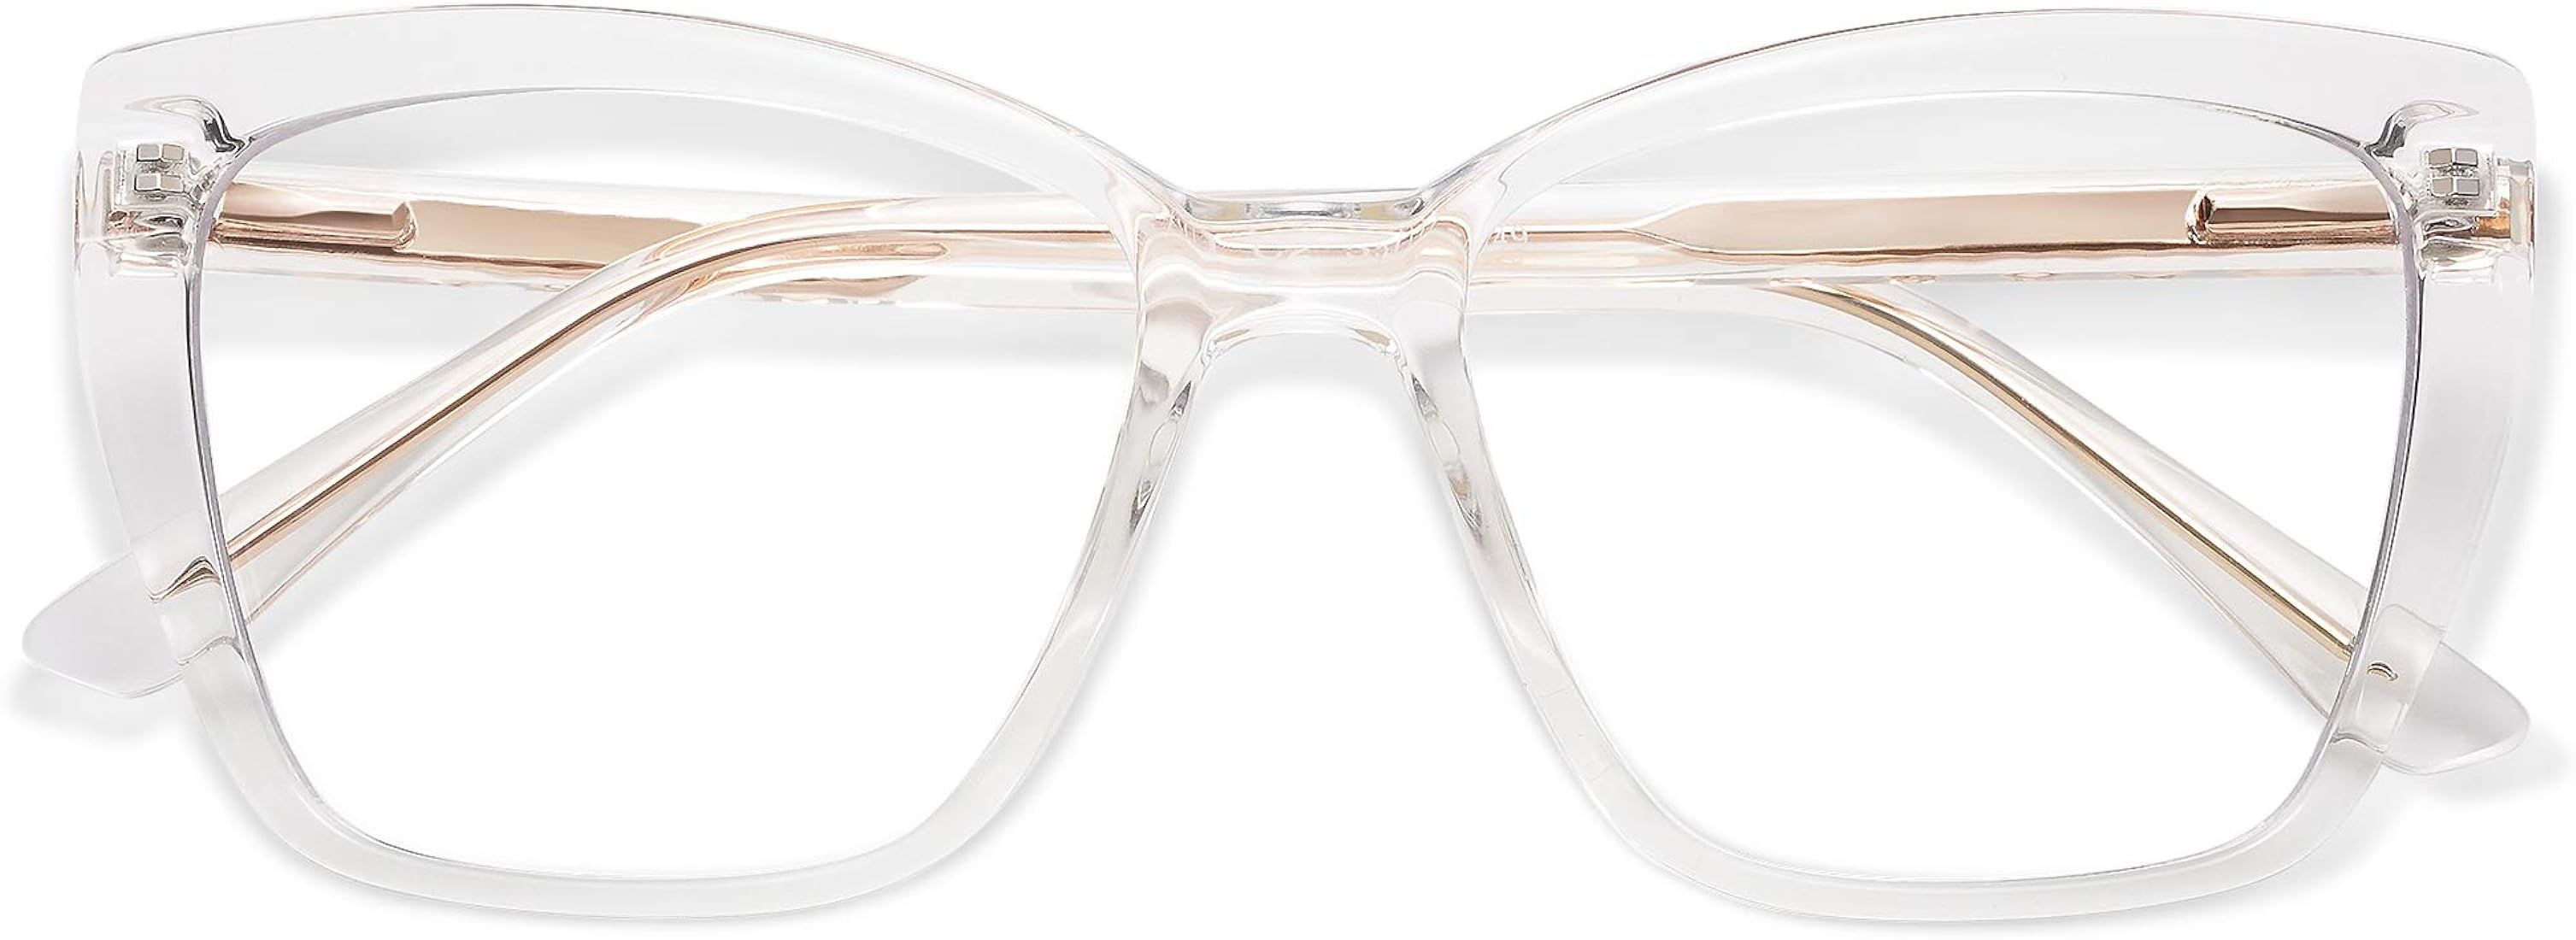 AMOMOMA Trendy TR90 Oversized Blue Light Reading Glasses Women,Stylish Square Cat Eye Glasses AM6031 | Amazon (US)